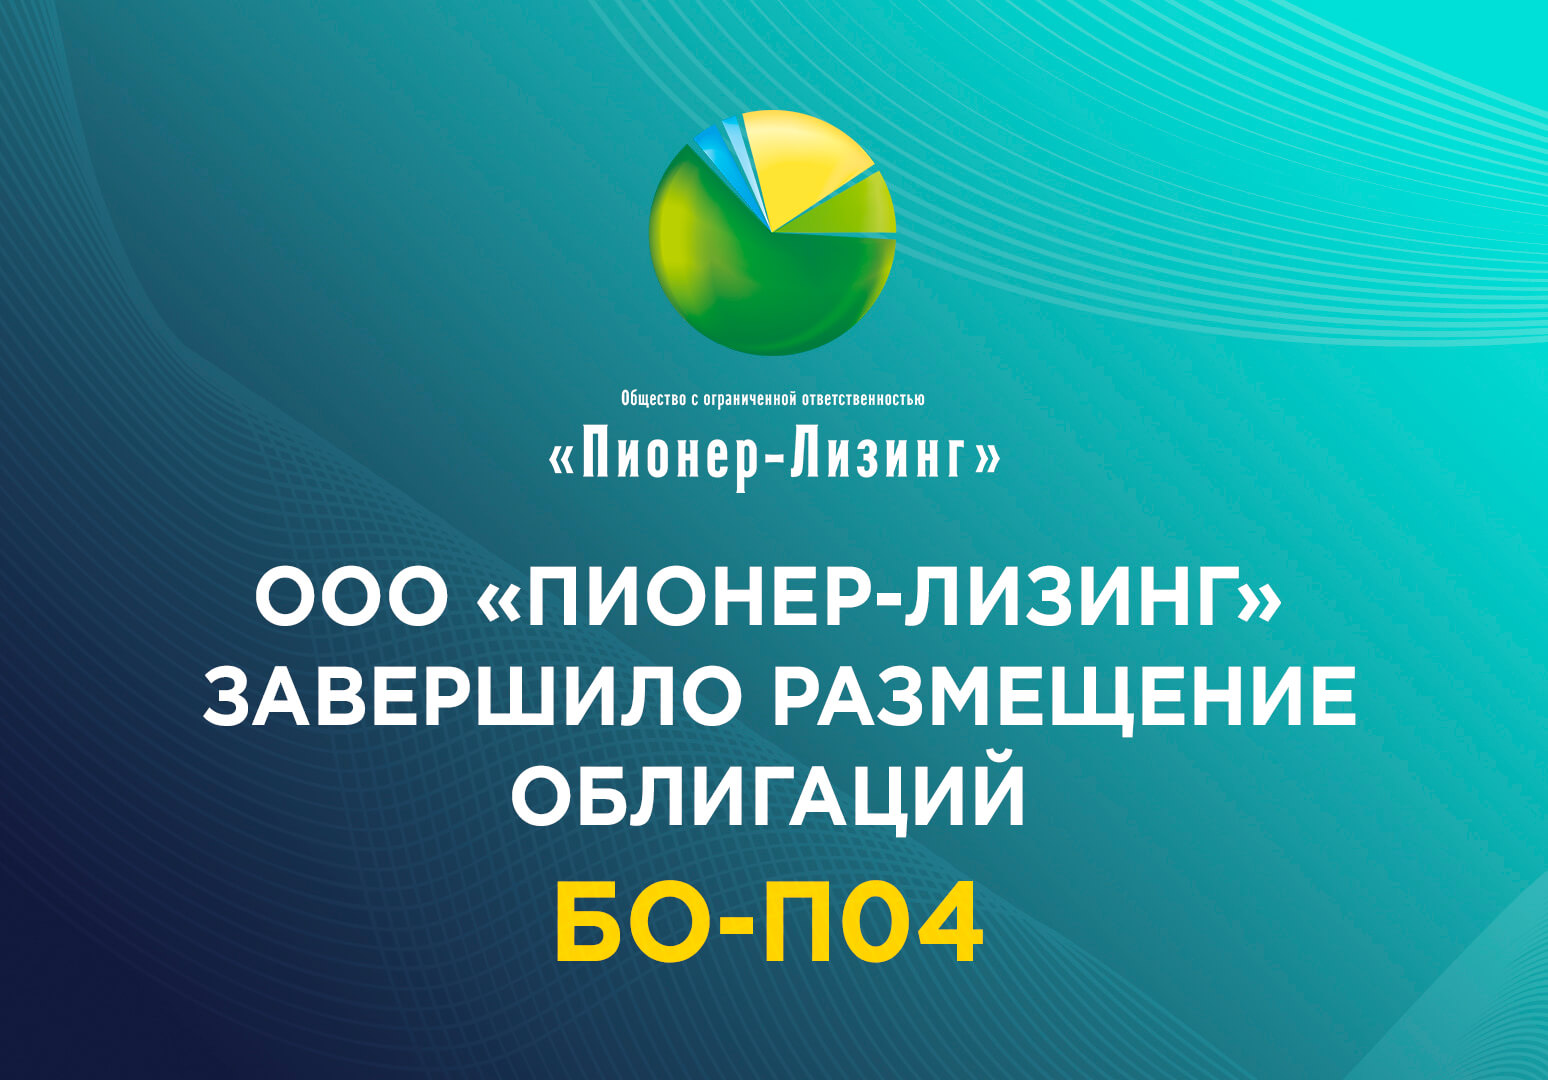 ООО «Пионер-Лизинг» завершило размещение облигаций БО-П04